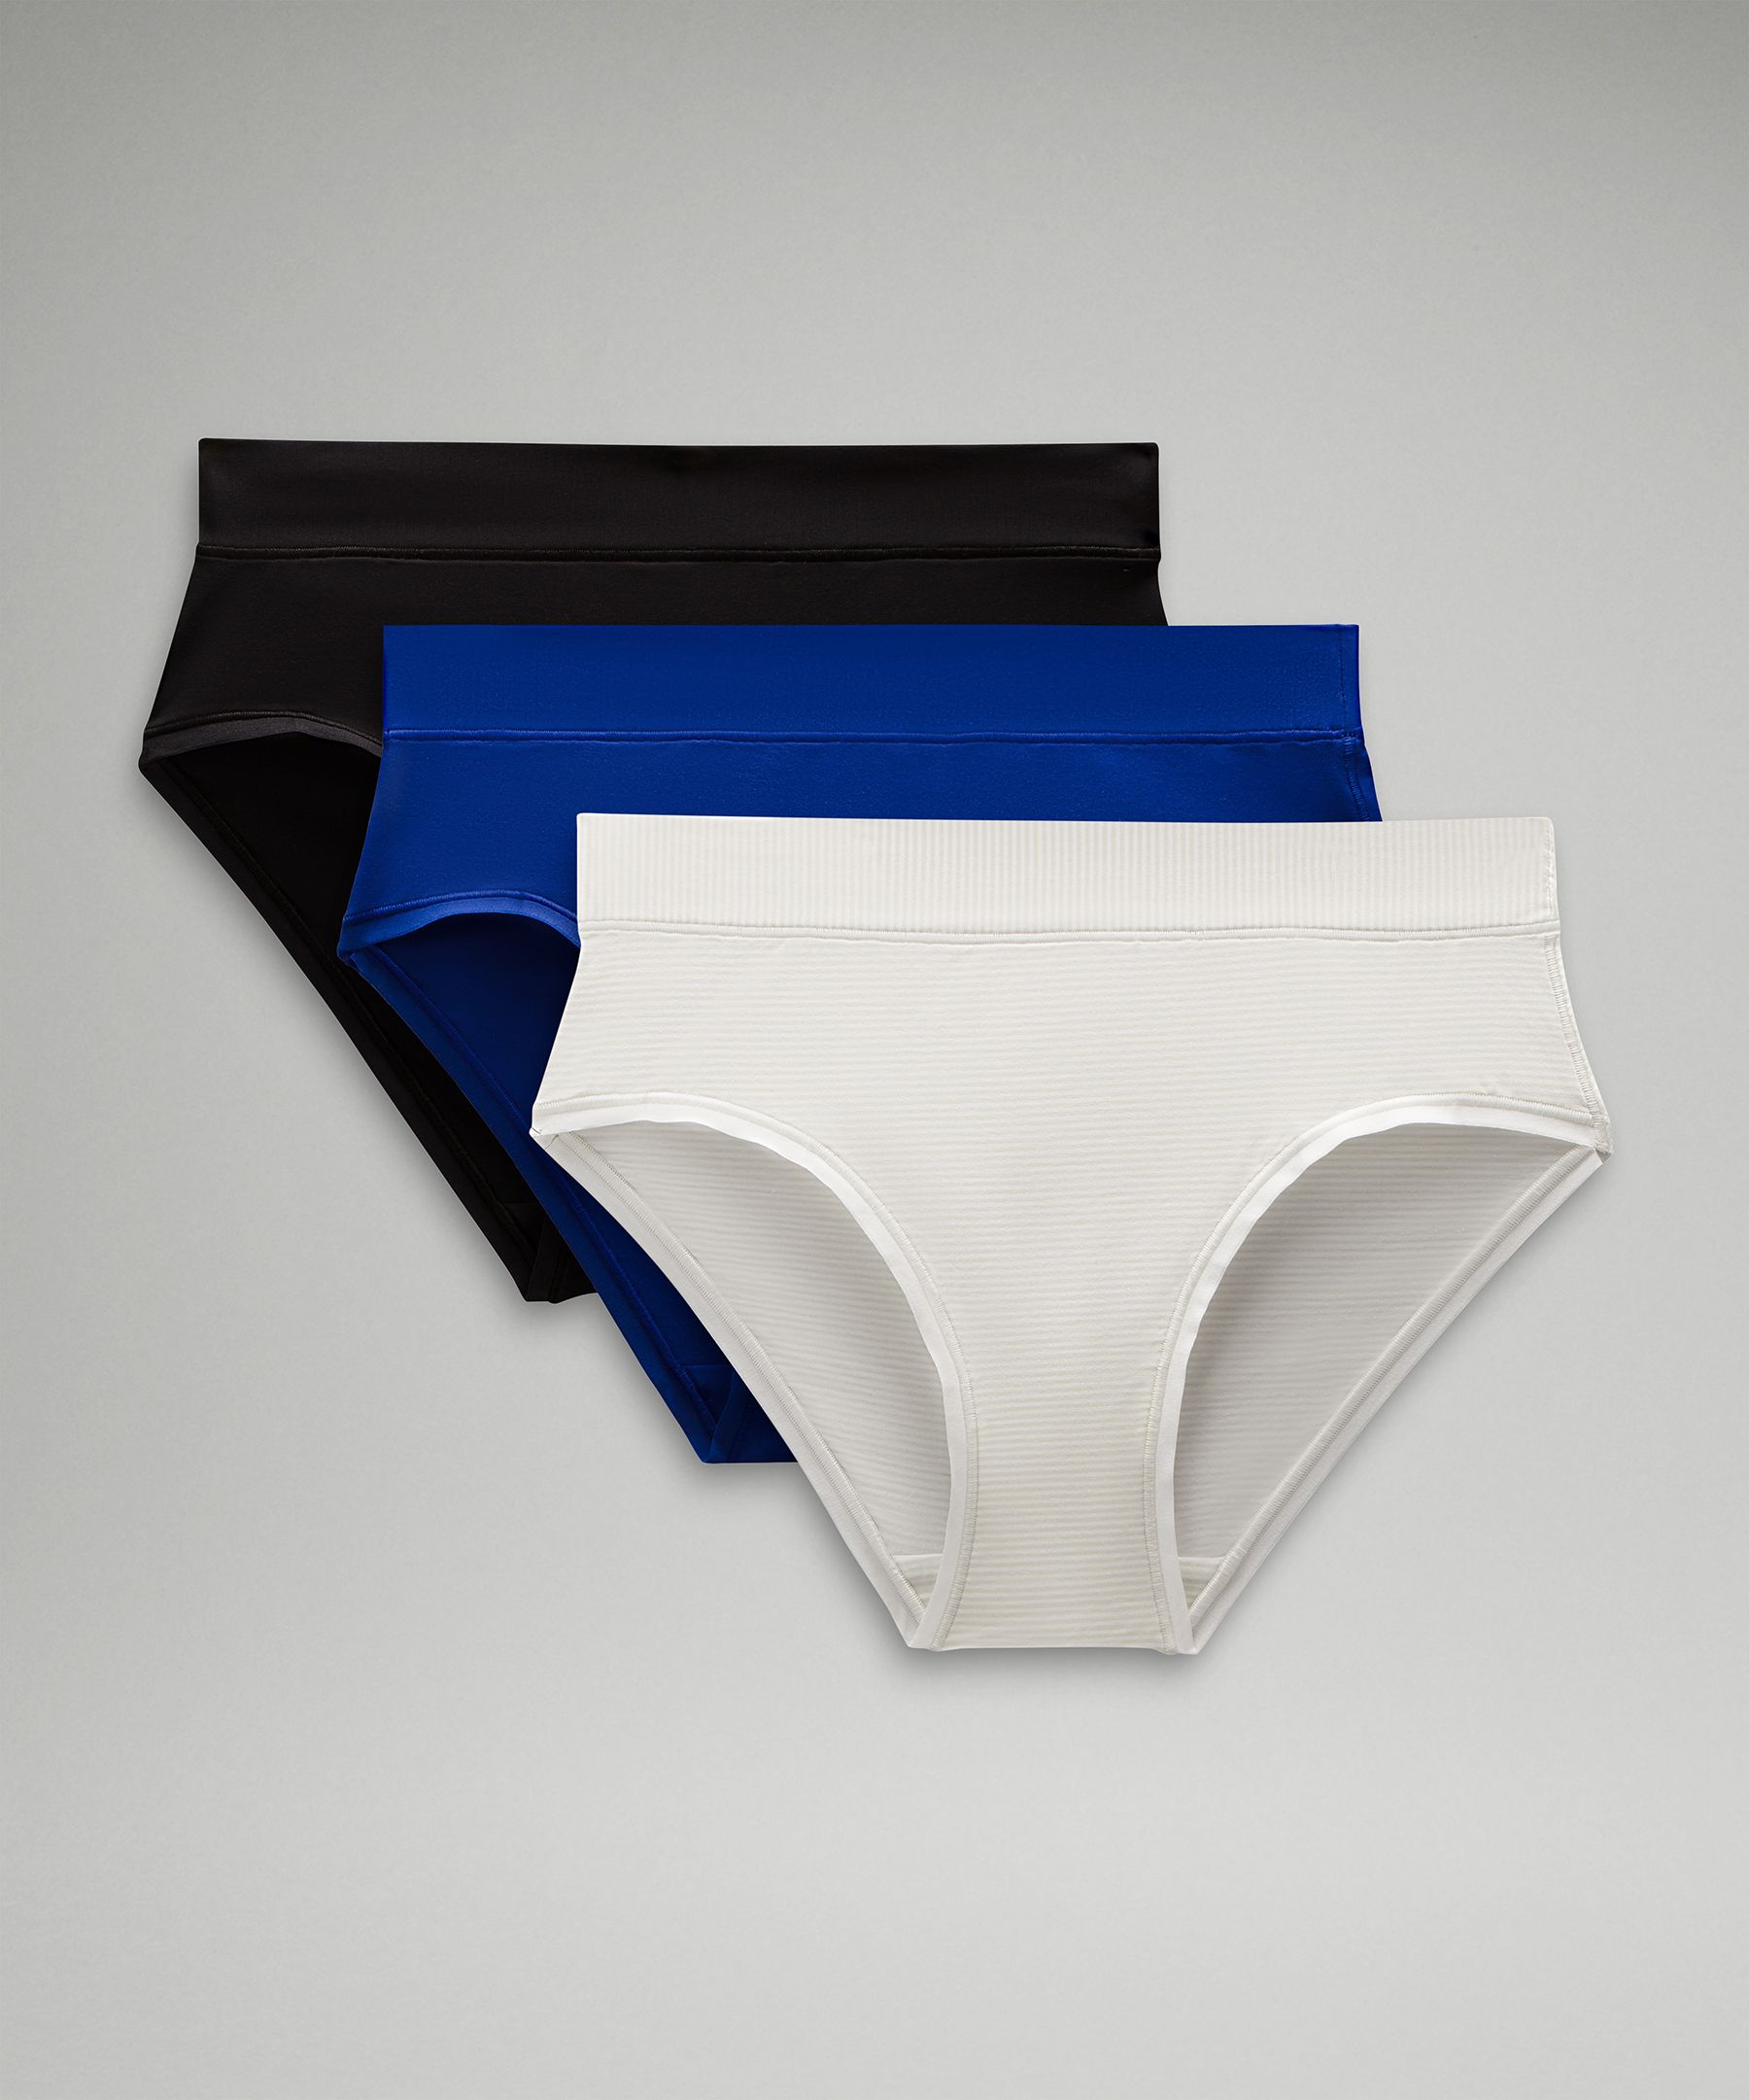 Underwear 3 Pack - Multi